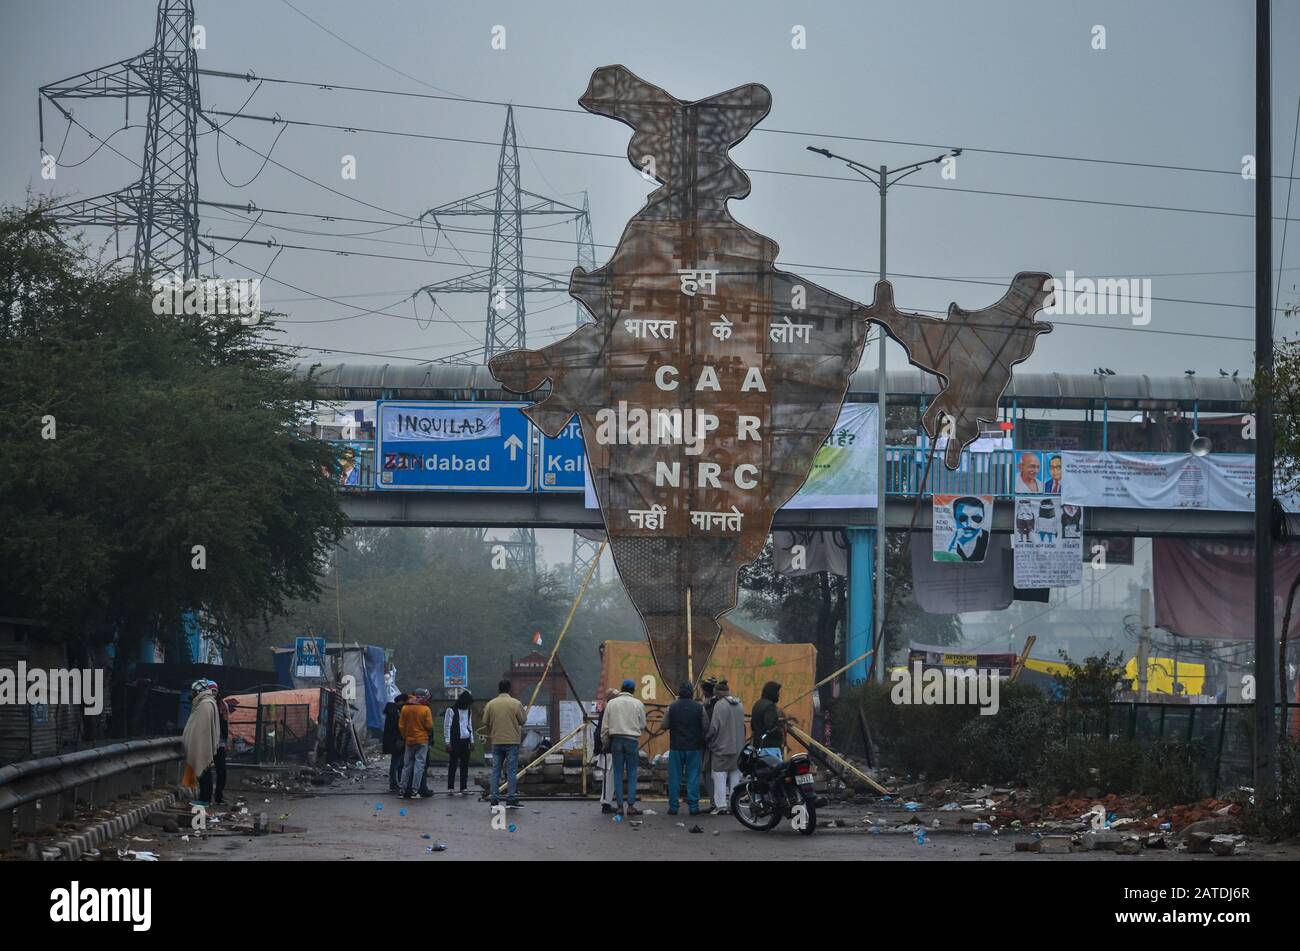 Frauen Protestieren gegen CAA & NRC, Shaheen Bagh, Neu-Delhi, Indien - 17. Januar 2020: Die Demonstranten installierten eine 40 Fuß hohe Struktur der Karte Indiens. Stockfoto